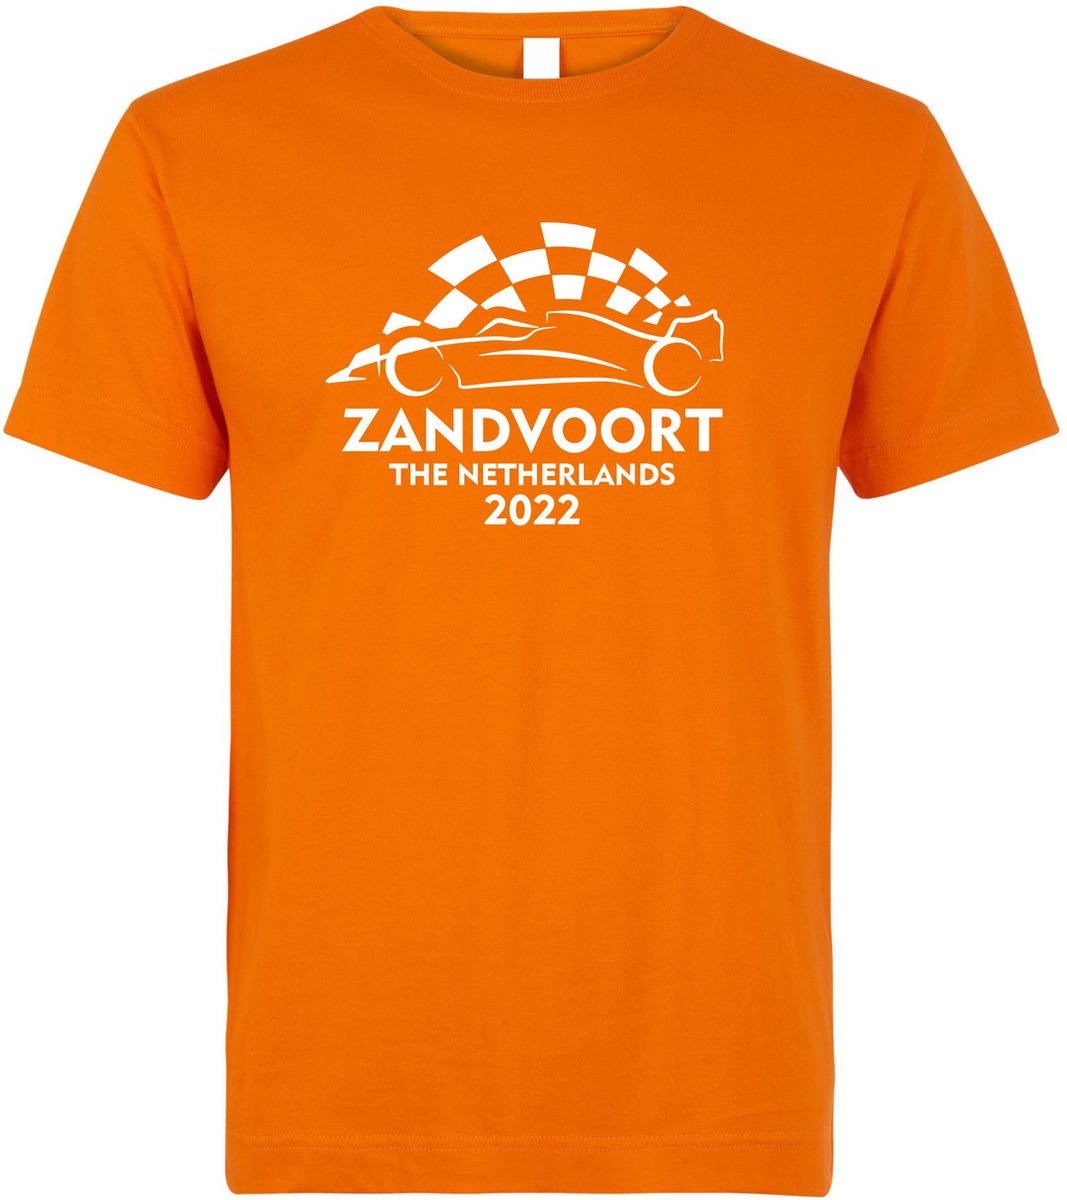 T-shirt kinderen Zandvoort 2022 met raceauto | Max Verstappen / Red Bull Racing / Formule 1 fan | Grand Prix Circuit Zandvoort | kleding shirt | Oranje | maat 140